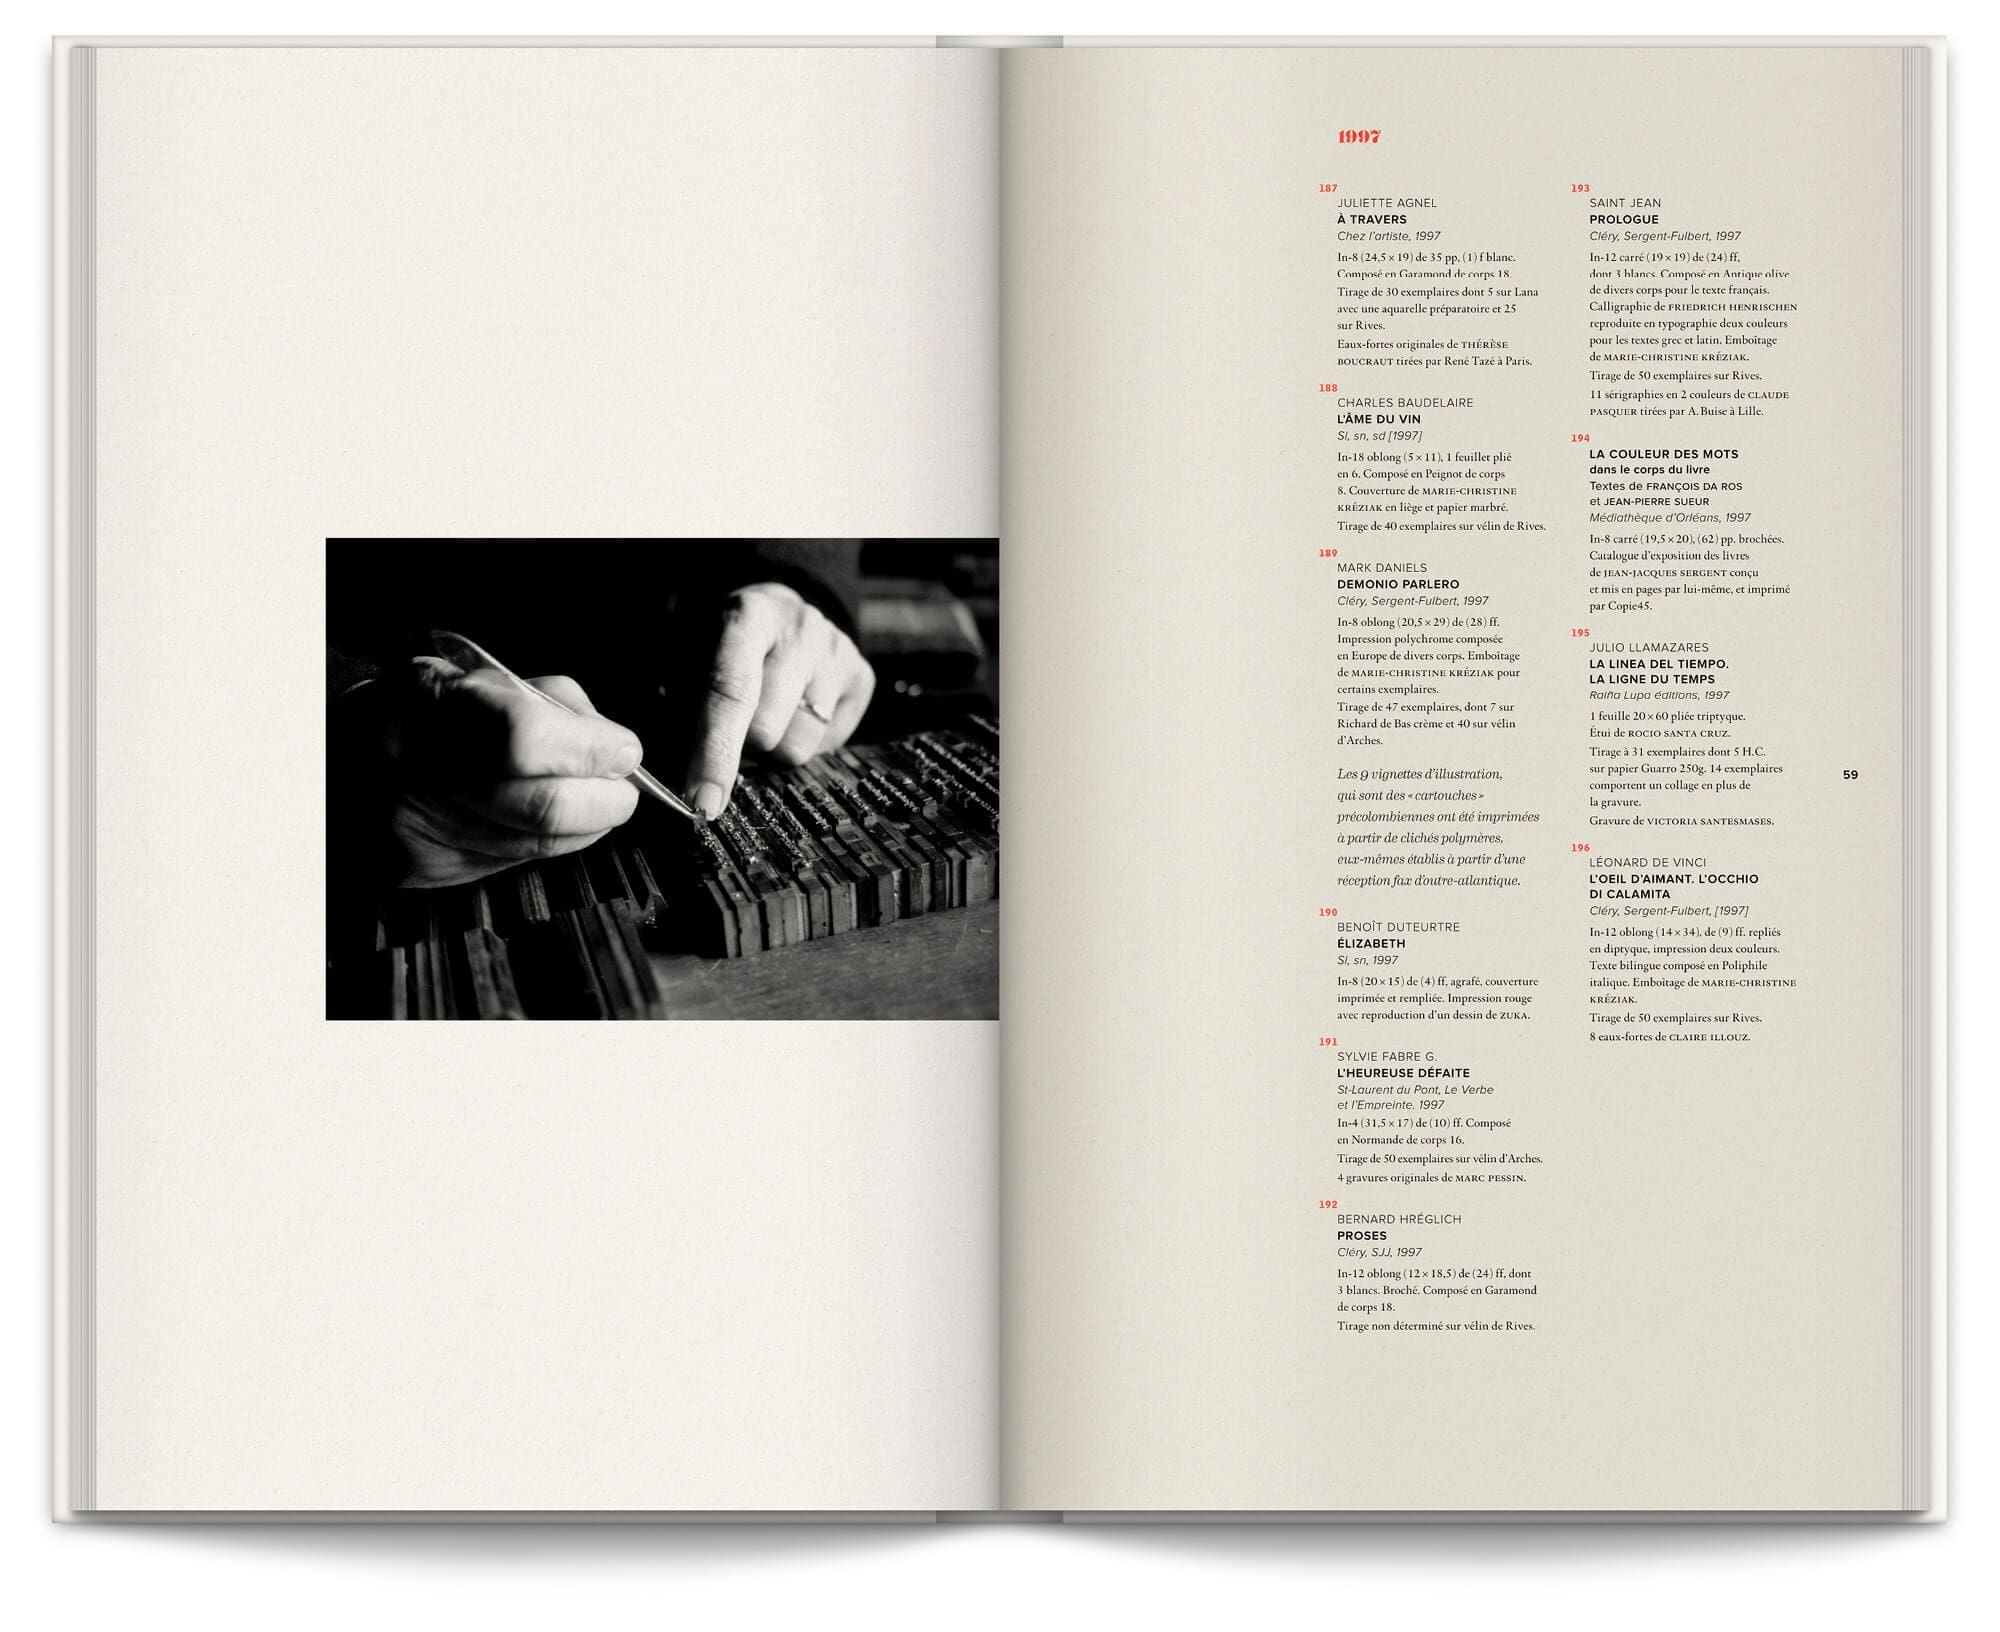 Livre "Jean-Jacques Sergent, Soldat de plomb", photographie d'un imprimeur typographe en action, design graphique Ich&Kar.